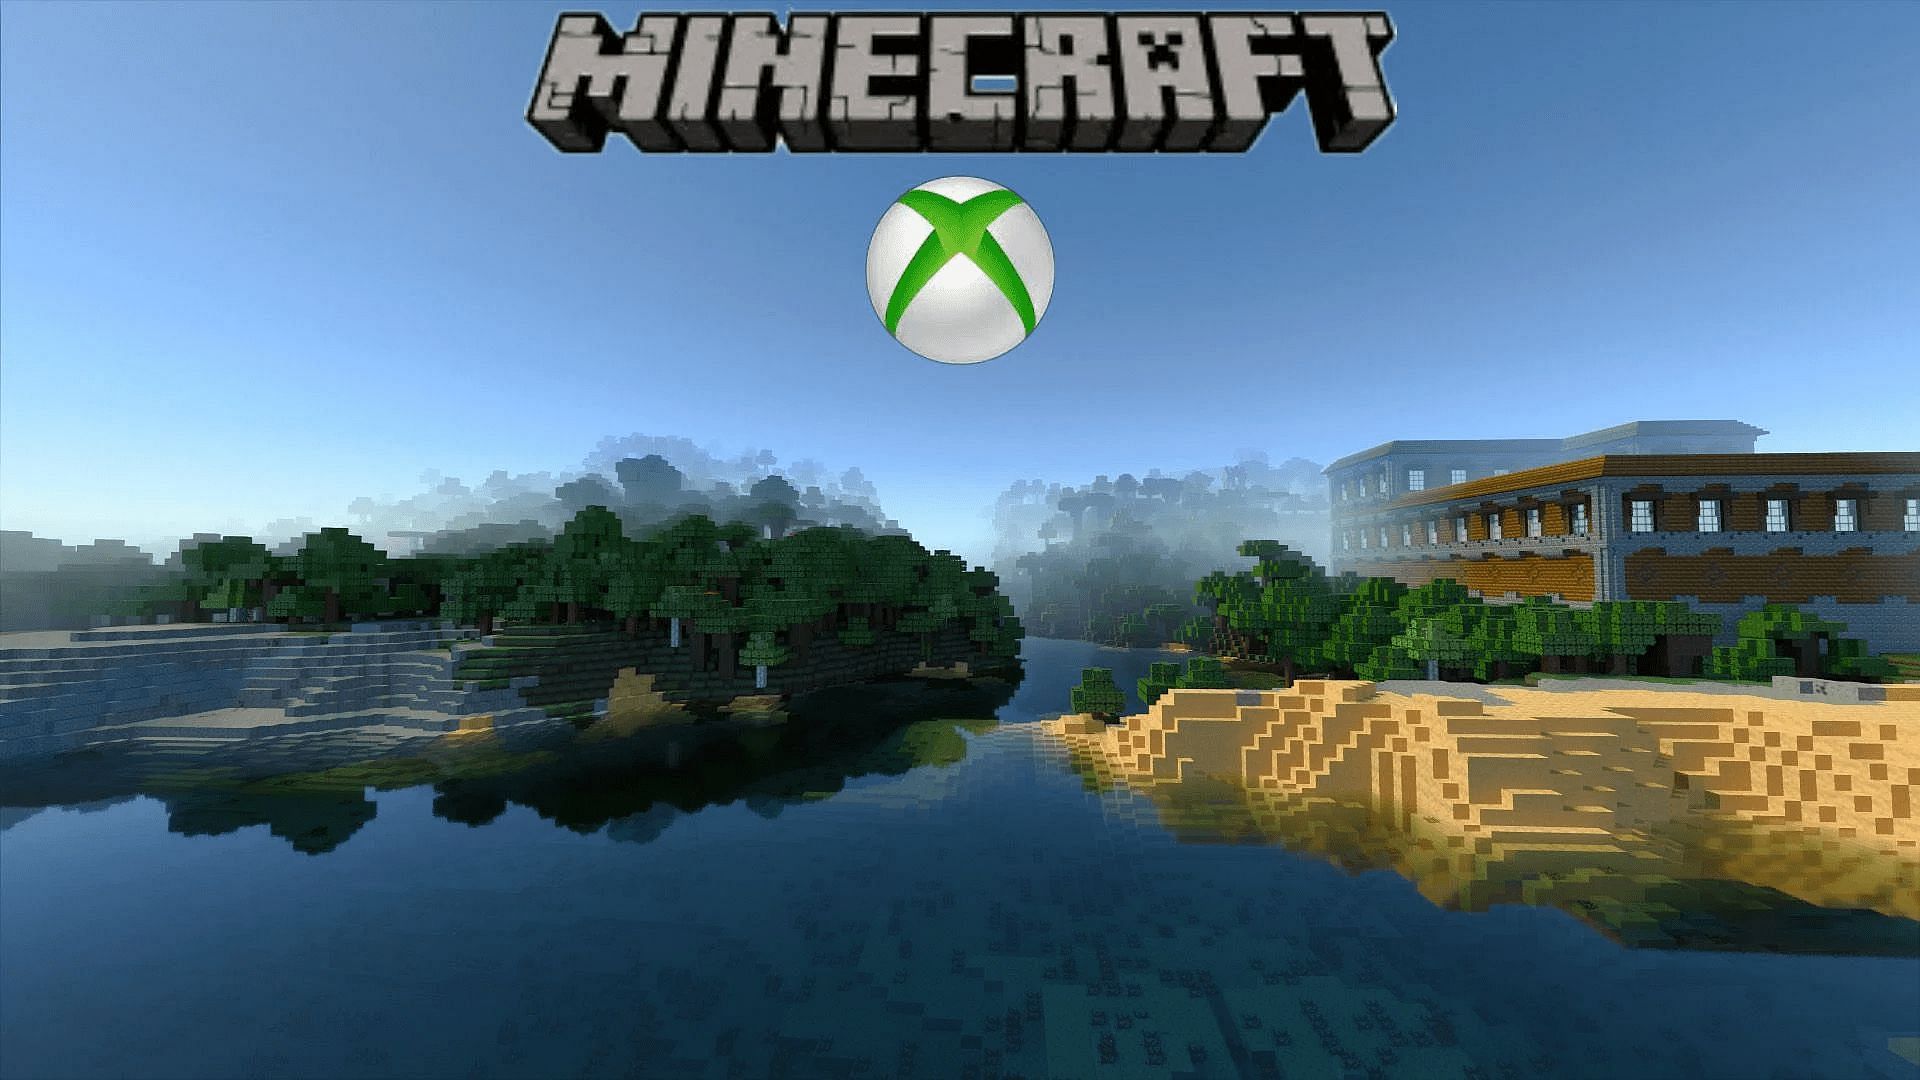 Les consoles Xbox peuvent mettre à jour Minecraft rapidement et efficacement (Image via Mojang/Microsoft)